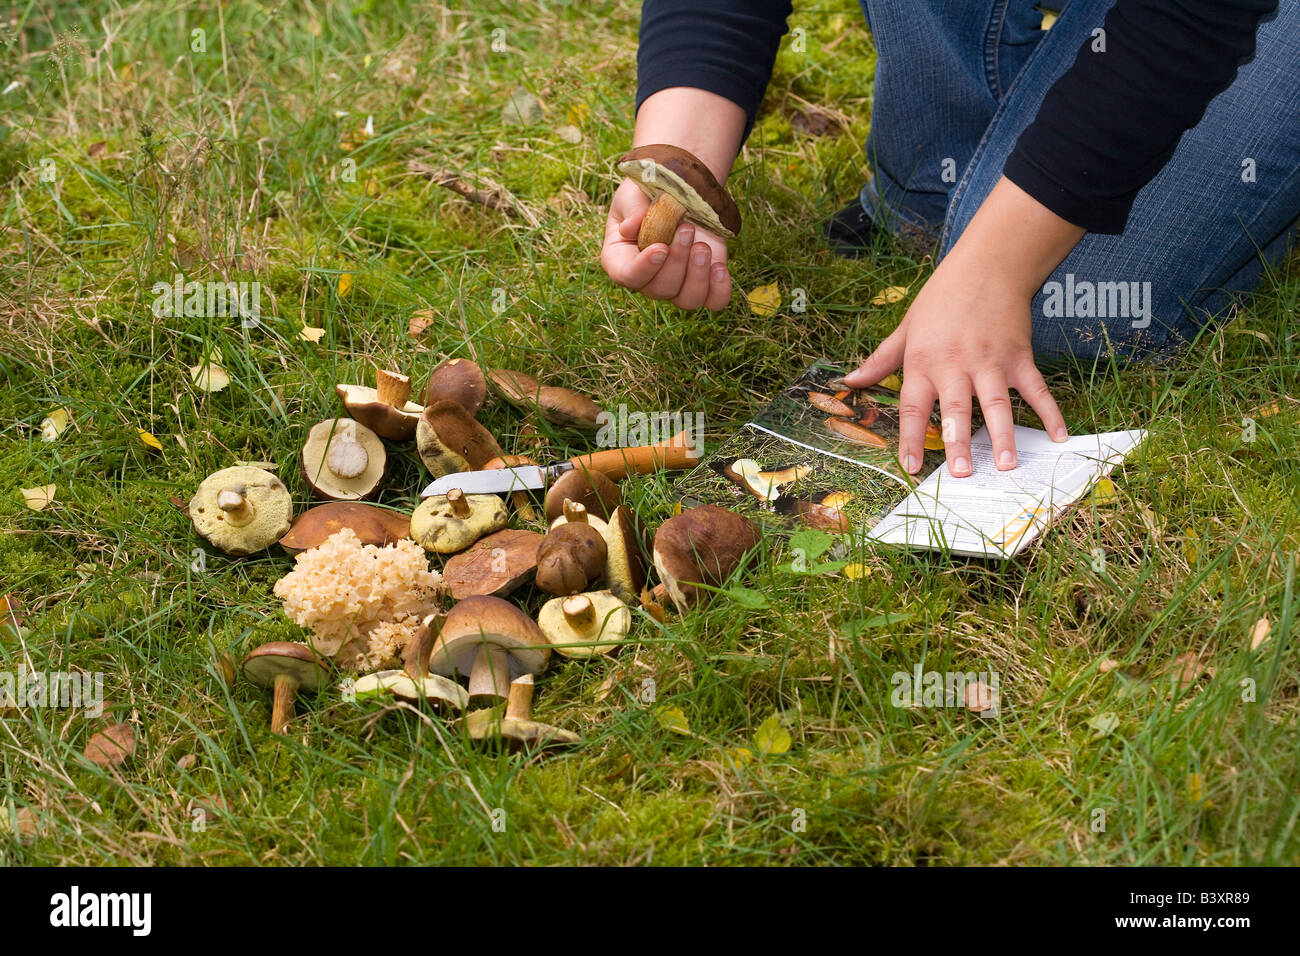 L'identification de la femme dans la forêt fraîchement cueilli des champignons comestibles Banque D'Images